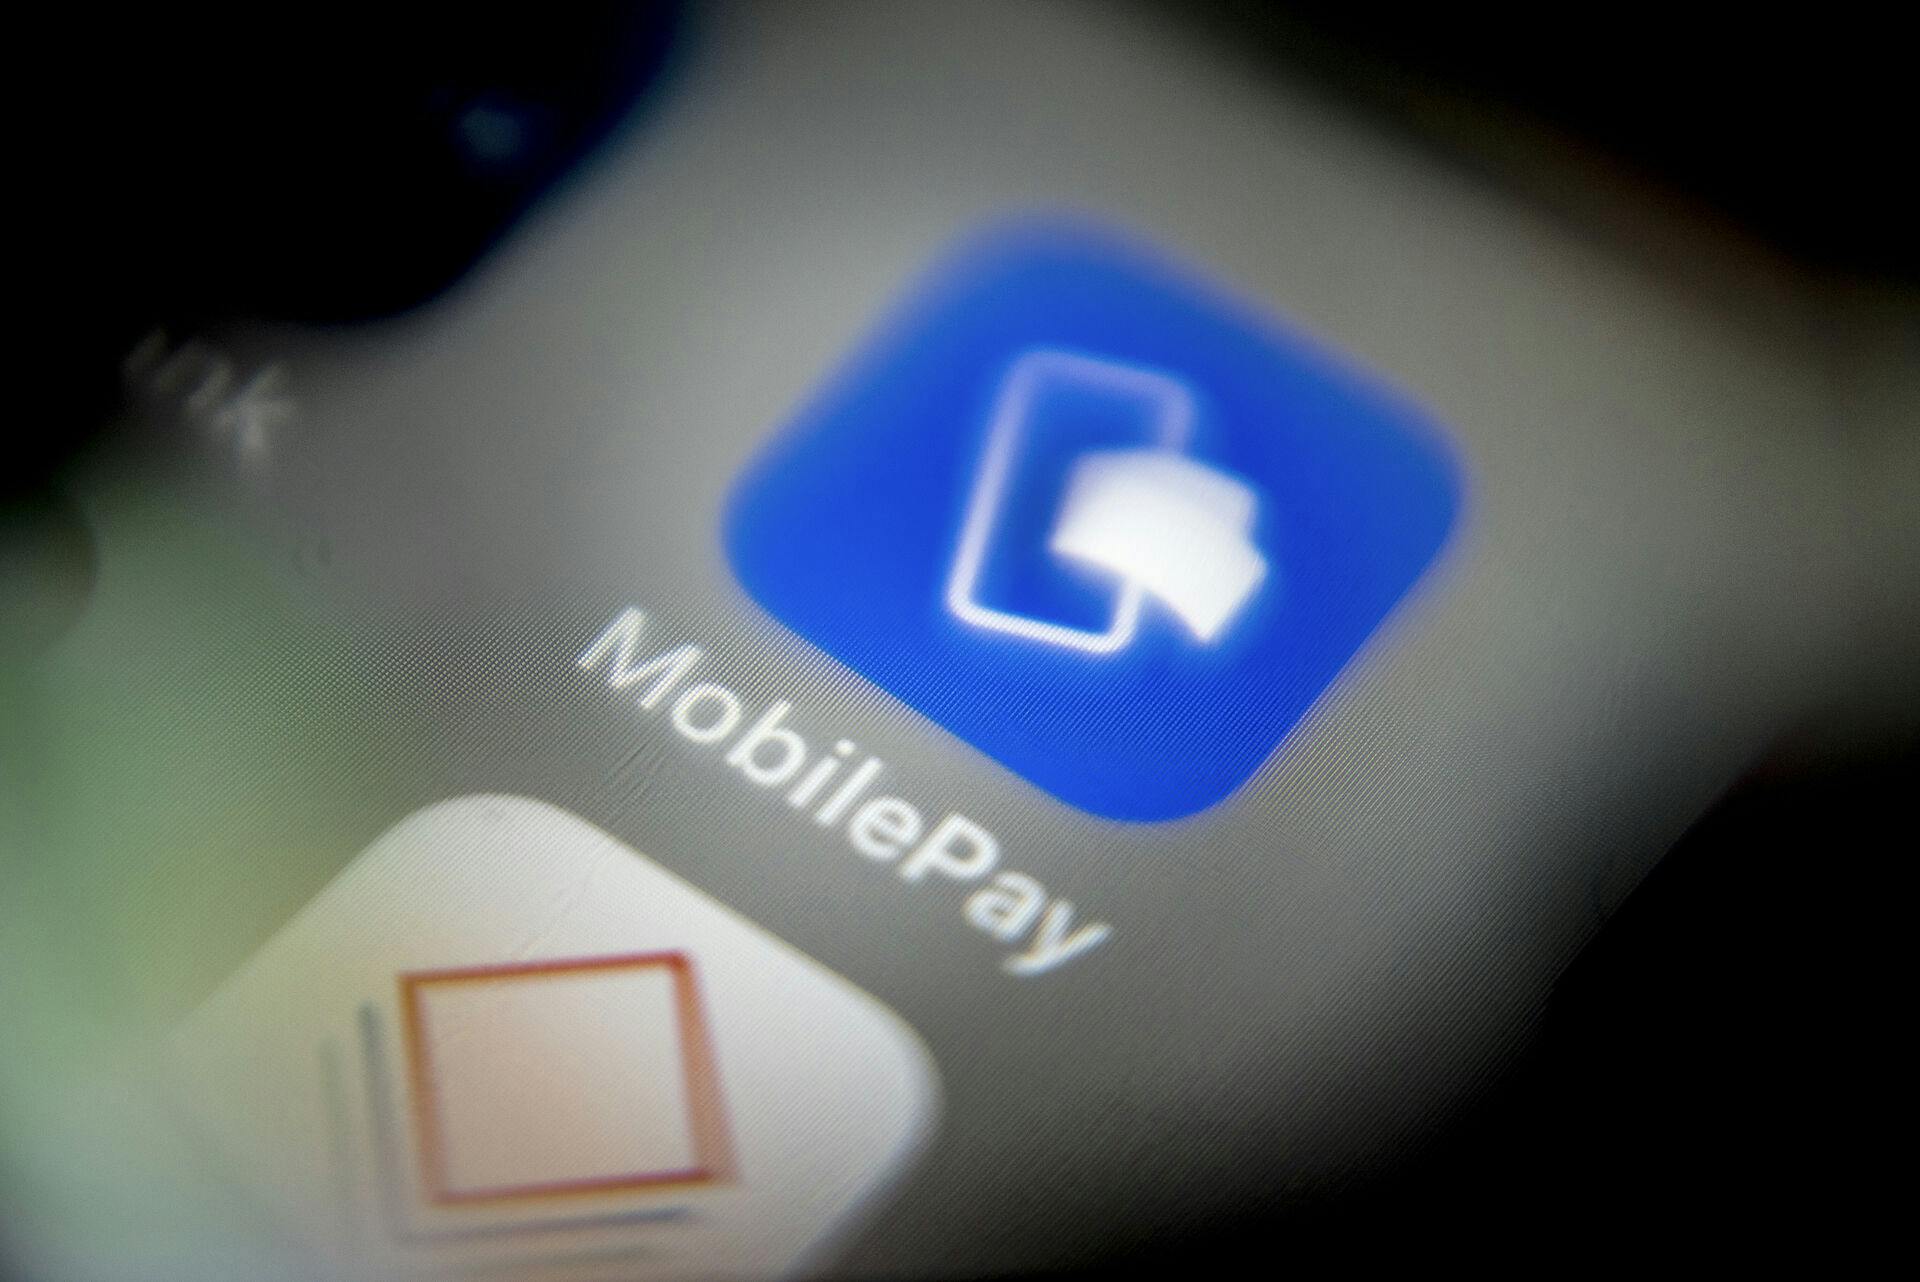 Flere MobilePay-brugere panikkede, efter de opdaterede deres app. Her stod opsagte betalingsaftaler pludseligt som aktive i appen.